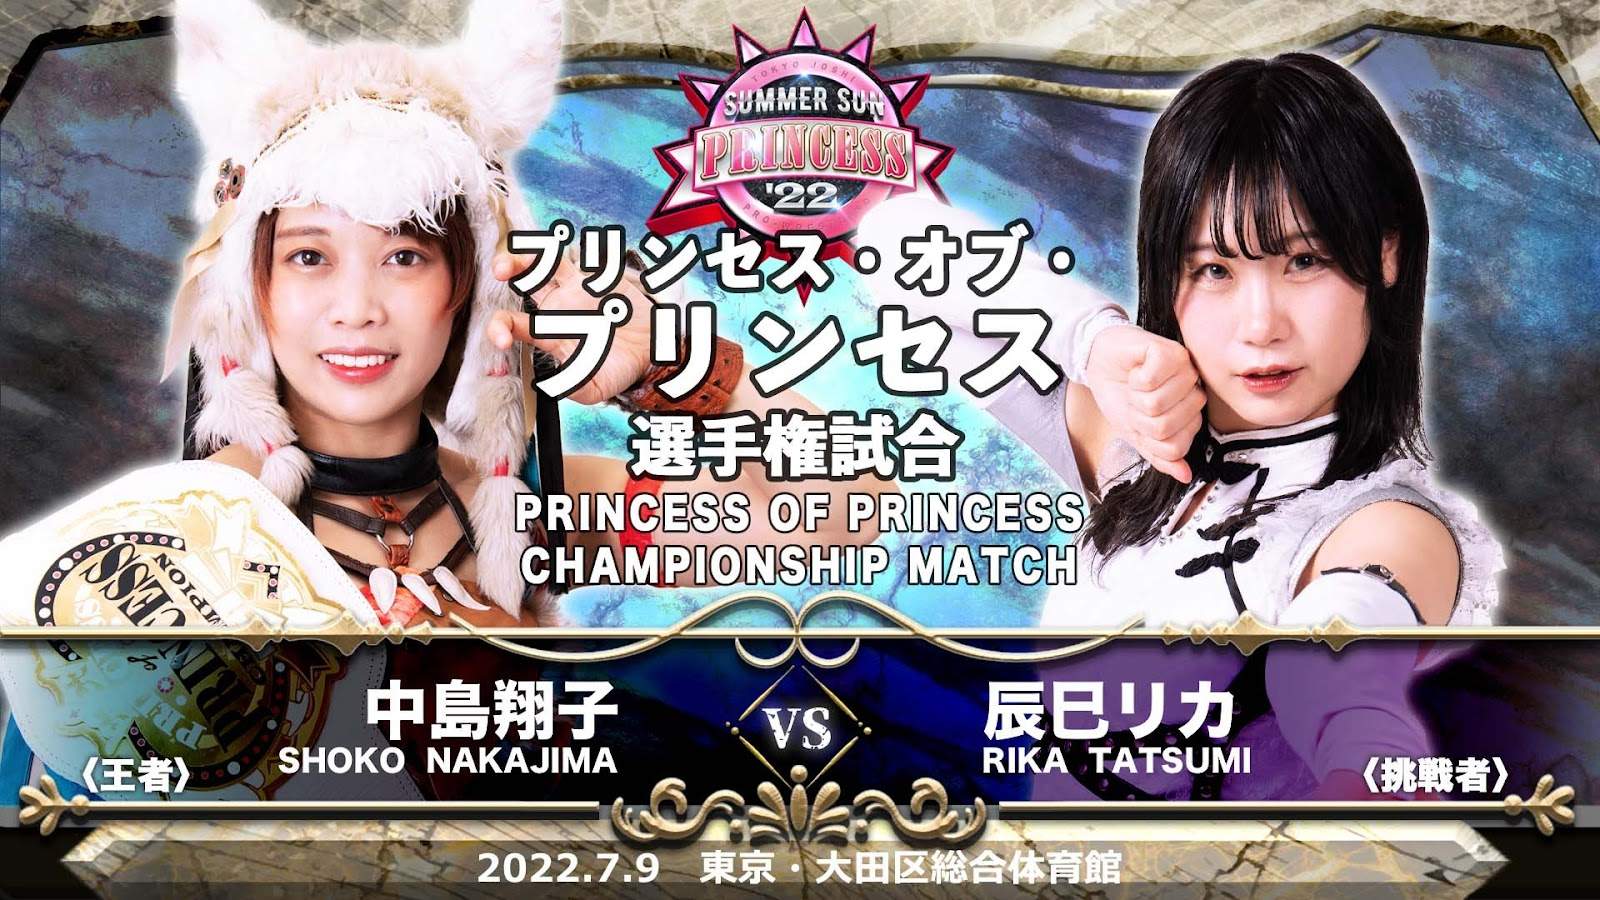 TJPW Summer Sun Princess Event Report Shoko Nakajima defeats Rika